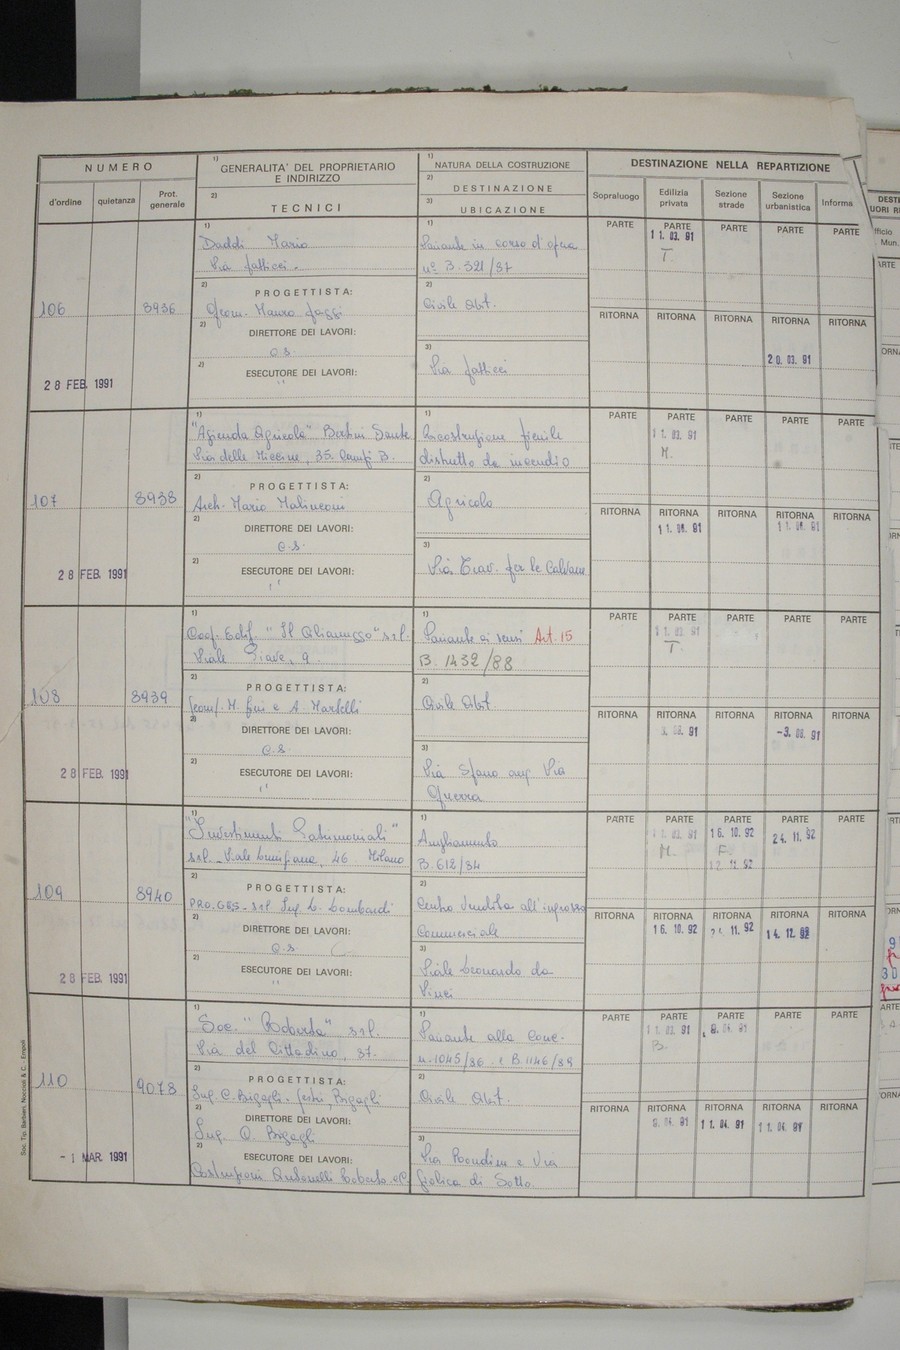 Foto del lato sinistro del registro con i dati della pratica 109/1991